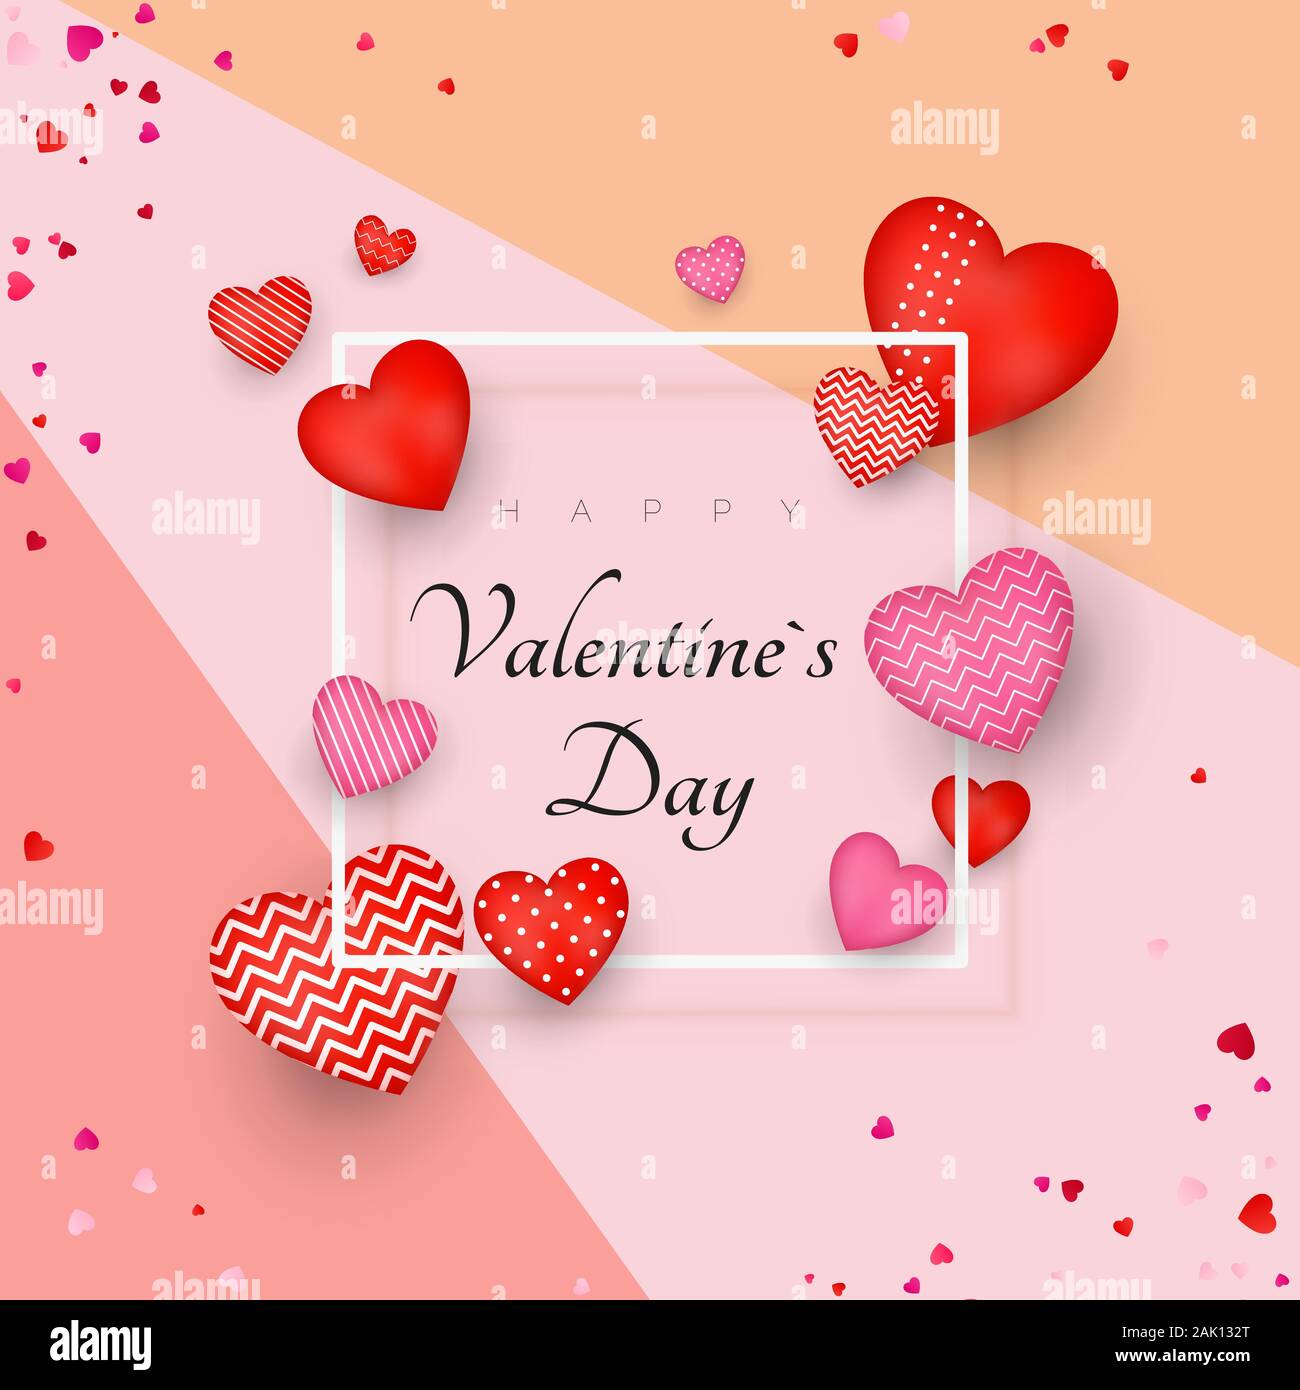 Happy Valentine's Day Grußkarte oder Einladung Design. Februar 14 Tag der Liebe und Romantik. My Valentine. Holiday Banner mit roten Herzen. Vecto Stock Vektor